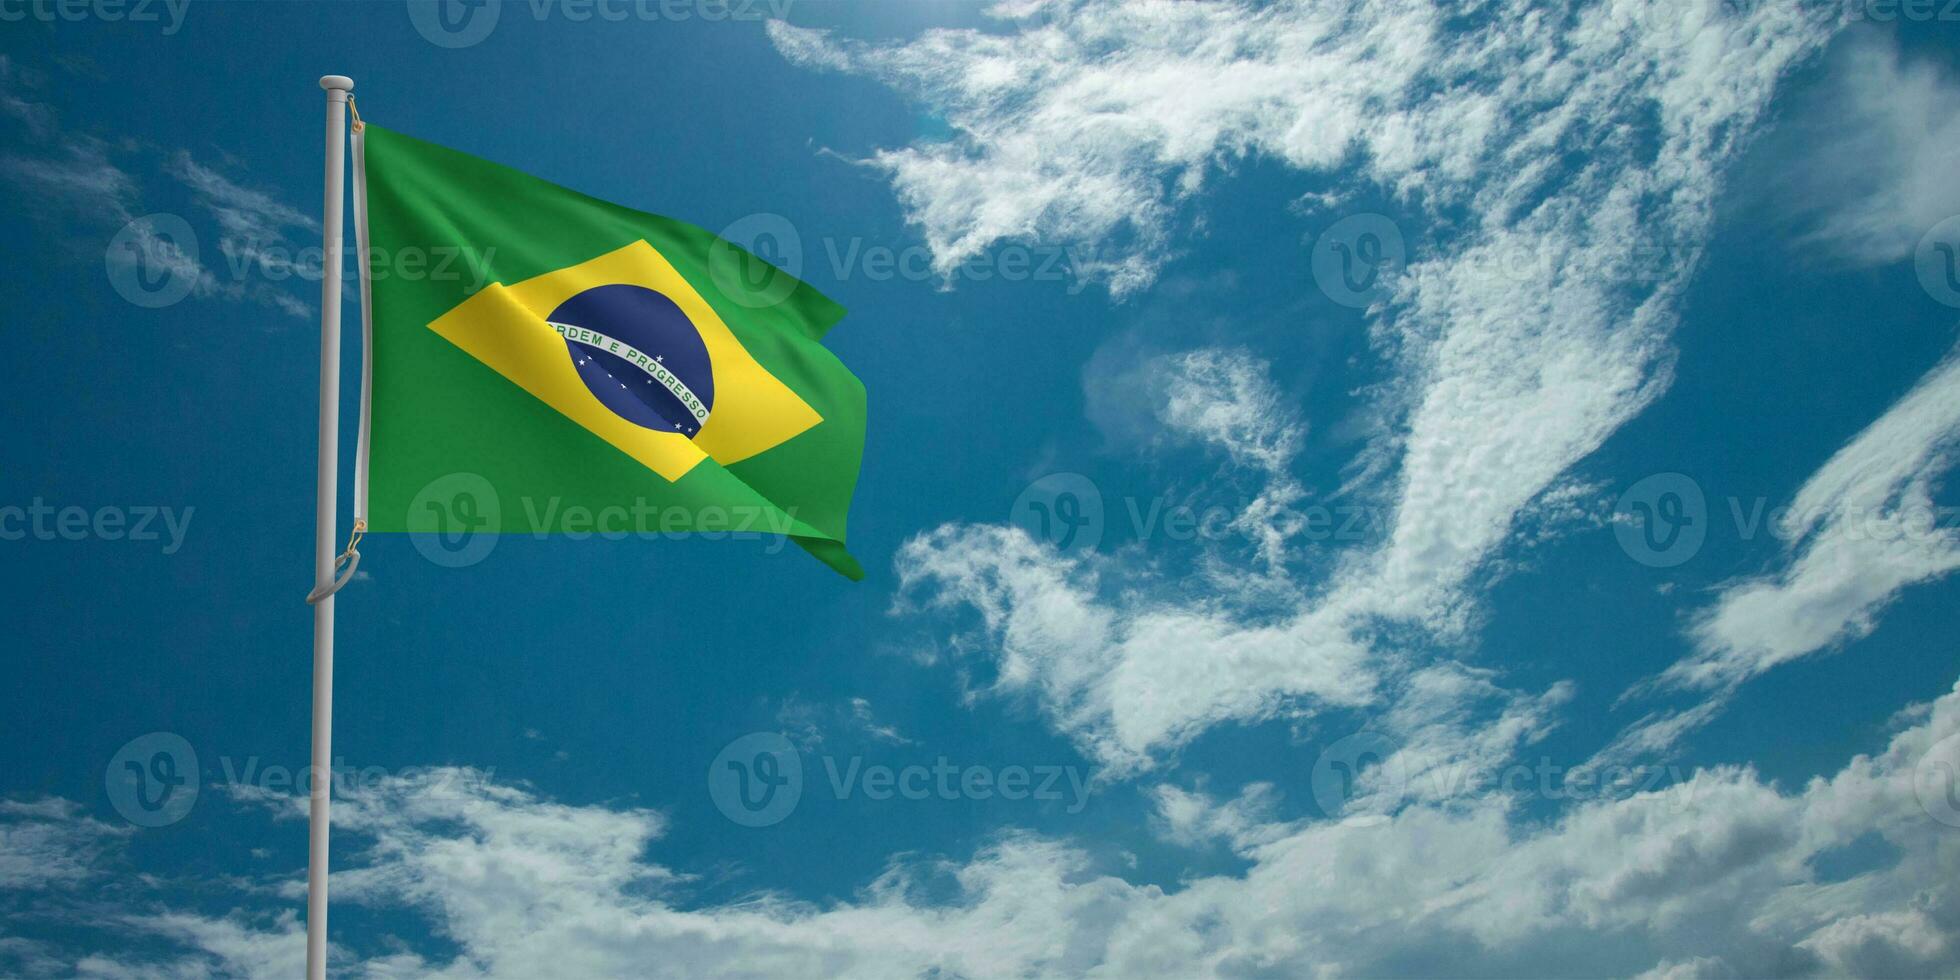 Brasilien Flagge Nation Feier Brasilianer Land Symbol patriotisch Unabhängigkeit Zeichen Banner Freiheit Blau Grün Gelb Urlaub Fußball Sport Konzept Regierung Emblem Kultur glücklich Fußball.3d machen foto